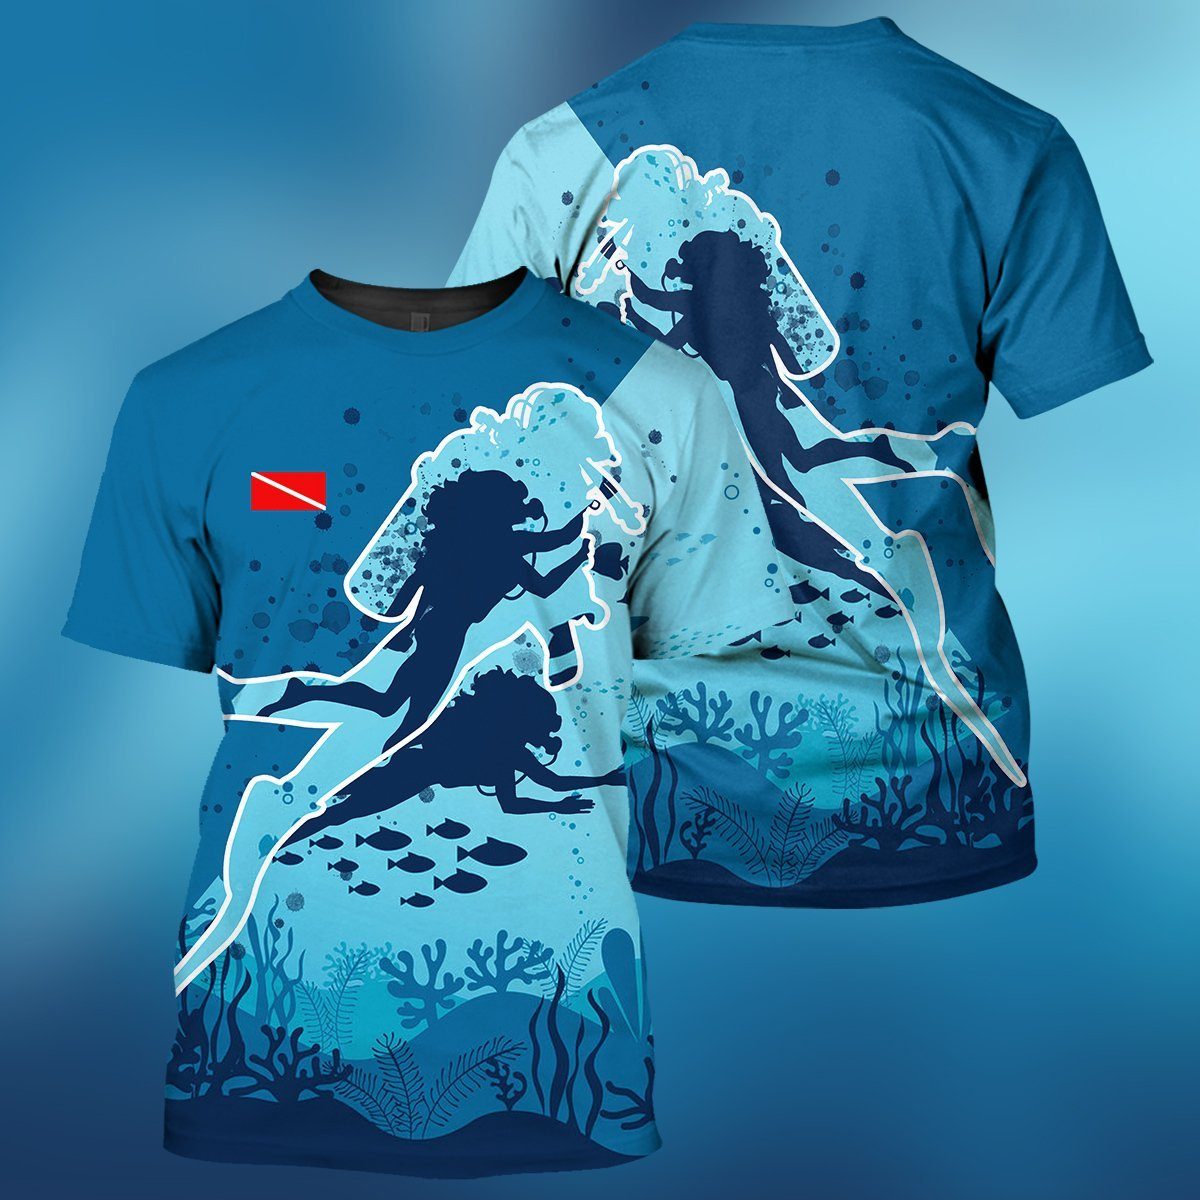 Gearhumans Scuba Diving Female Design - 3D All Over Printed Shirt shirt 3D Apparel T-SHIRT S 